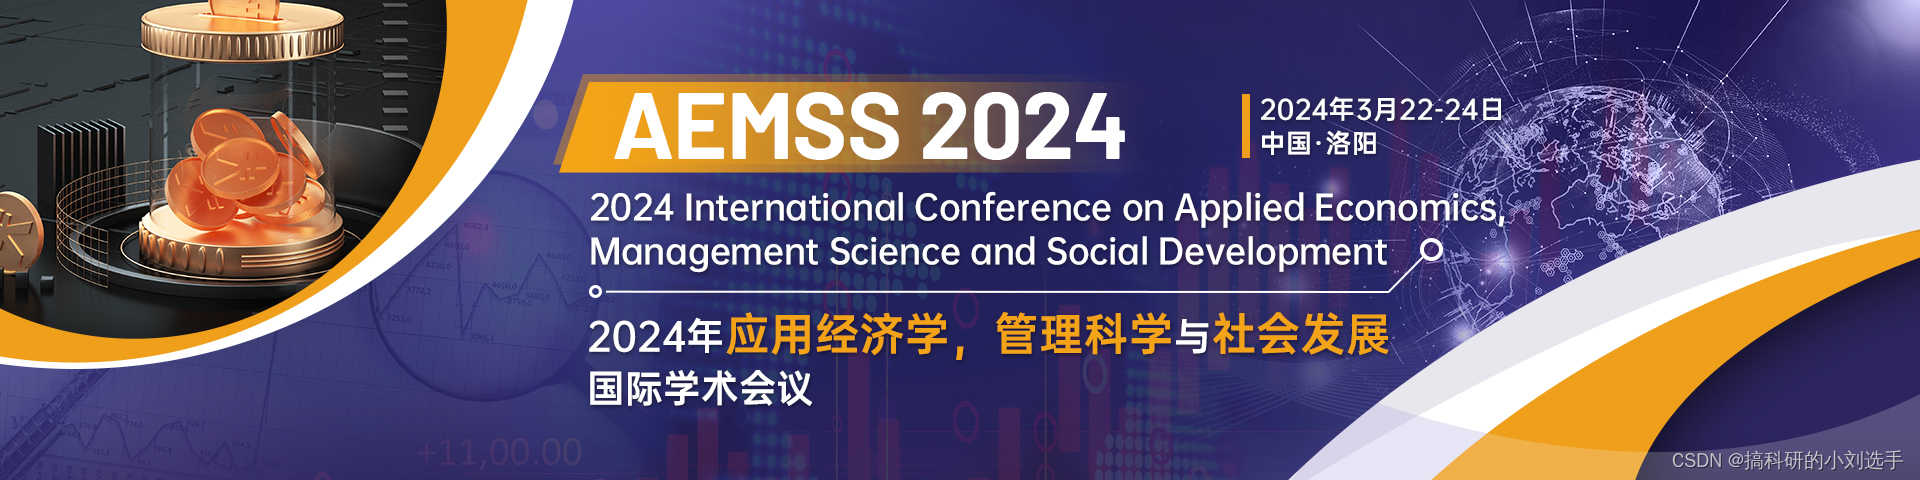 【知网稳定检索】2024年应用经济学，管理科学与社会发展国际学术会议（AEMSS 2024）